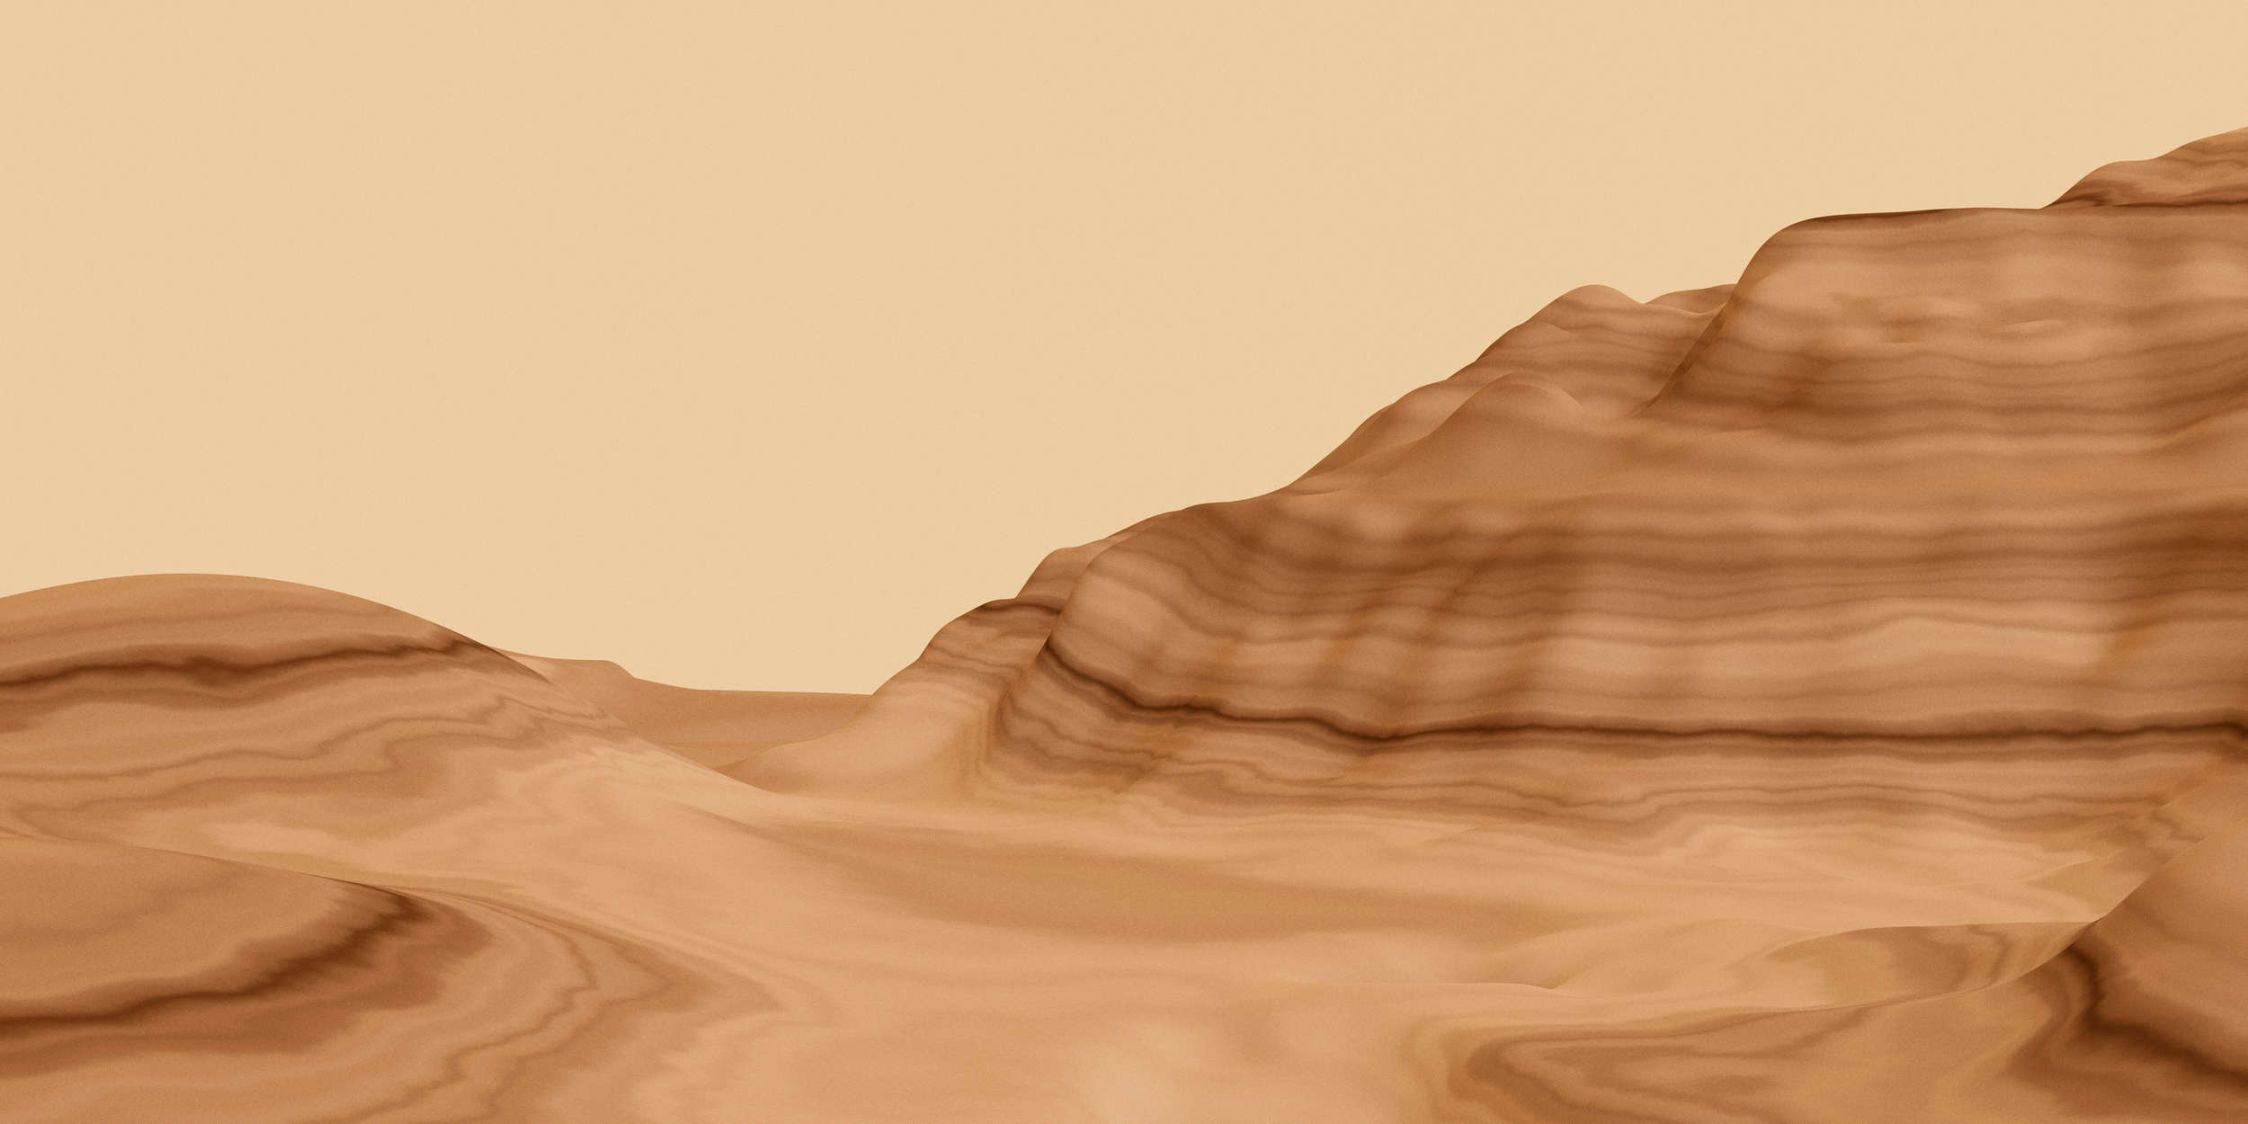             Fotomurali »luke« - Paesaggio desertico astratto - Materiali non tessuto liscio e leggermente perlato
        